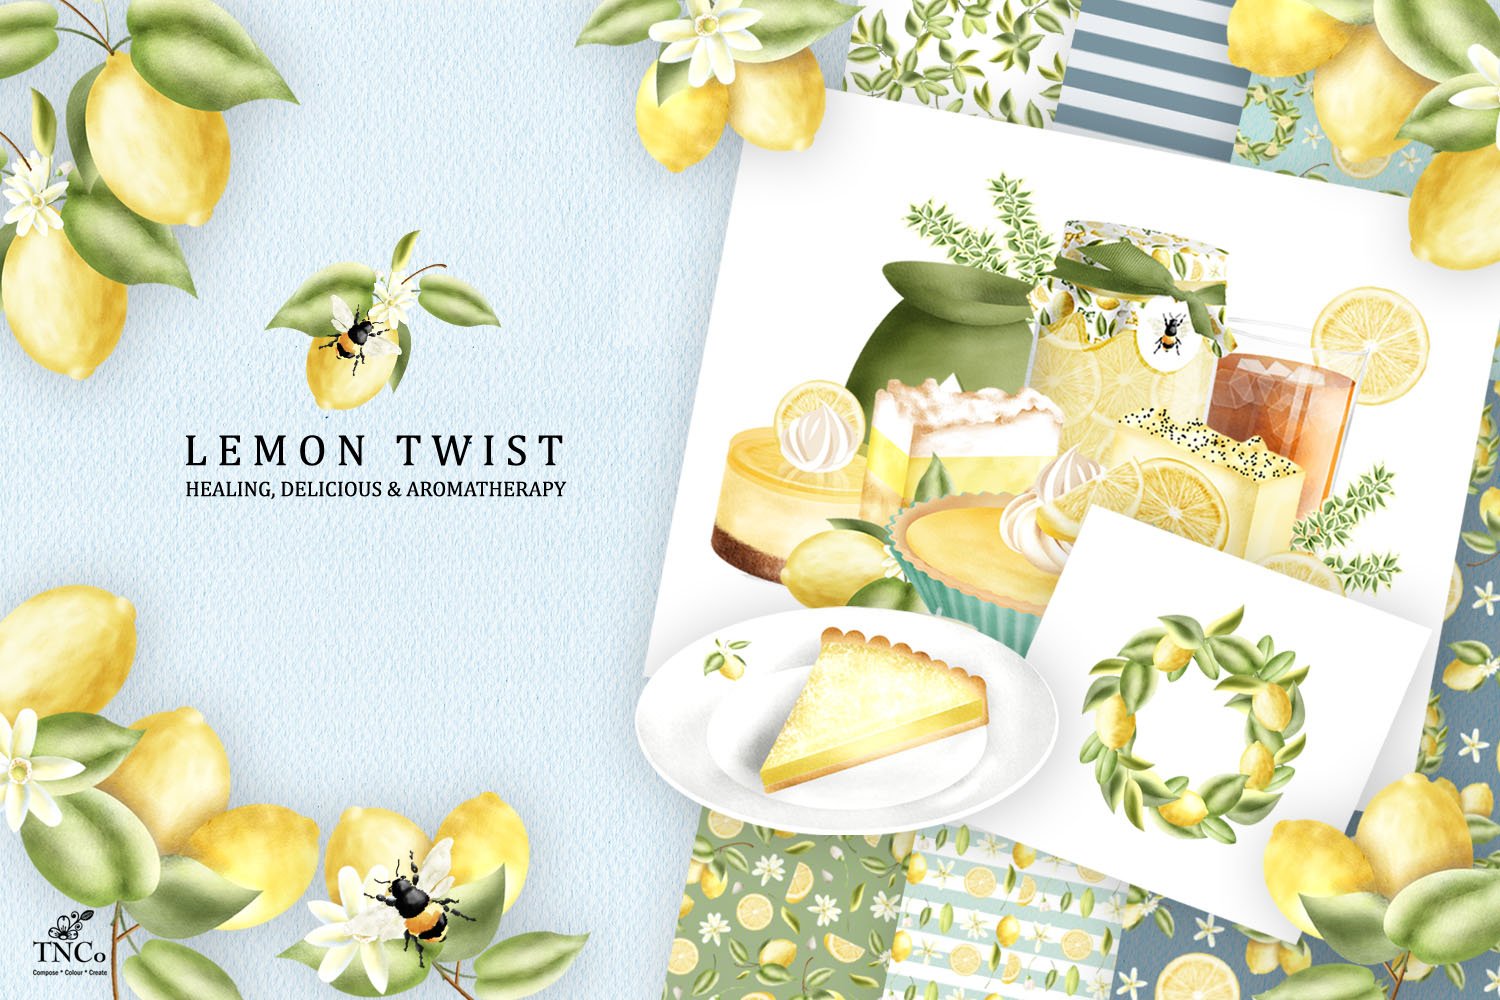 Lemon Twist - Graphics & Patterns cover image.